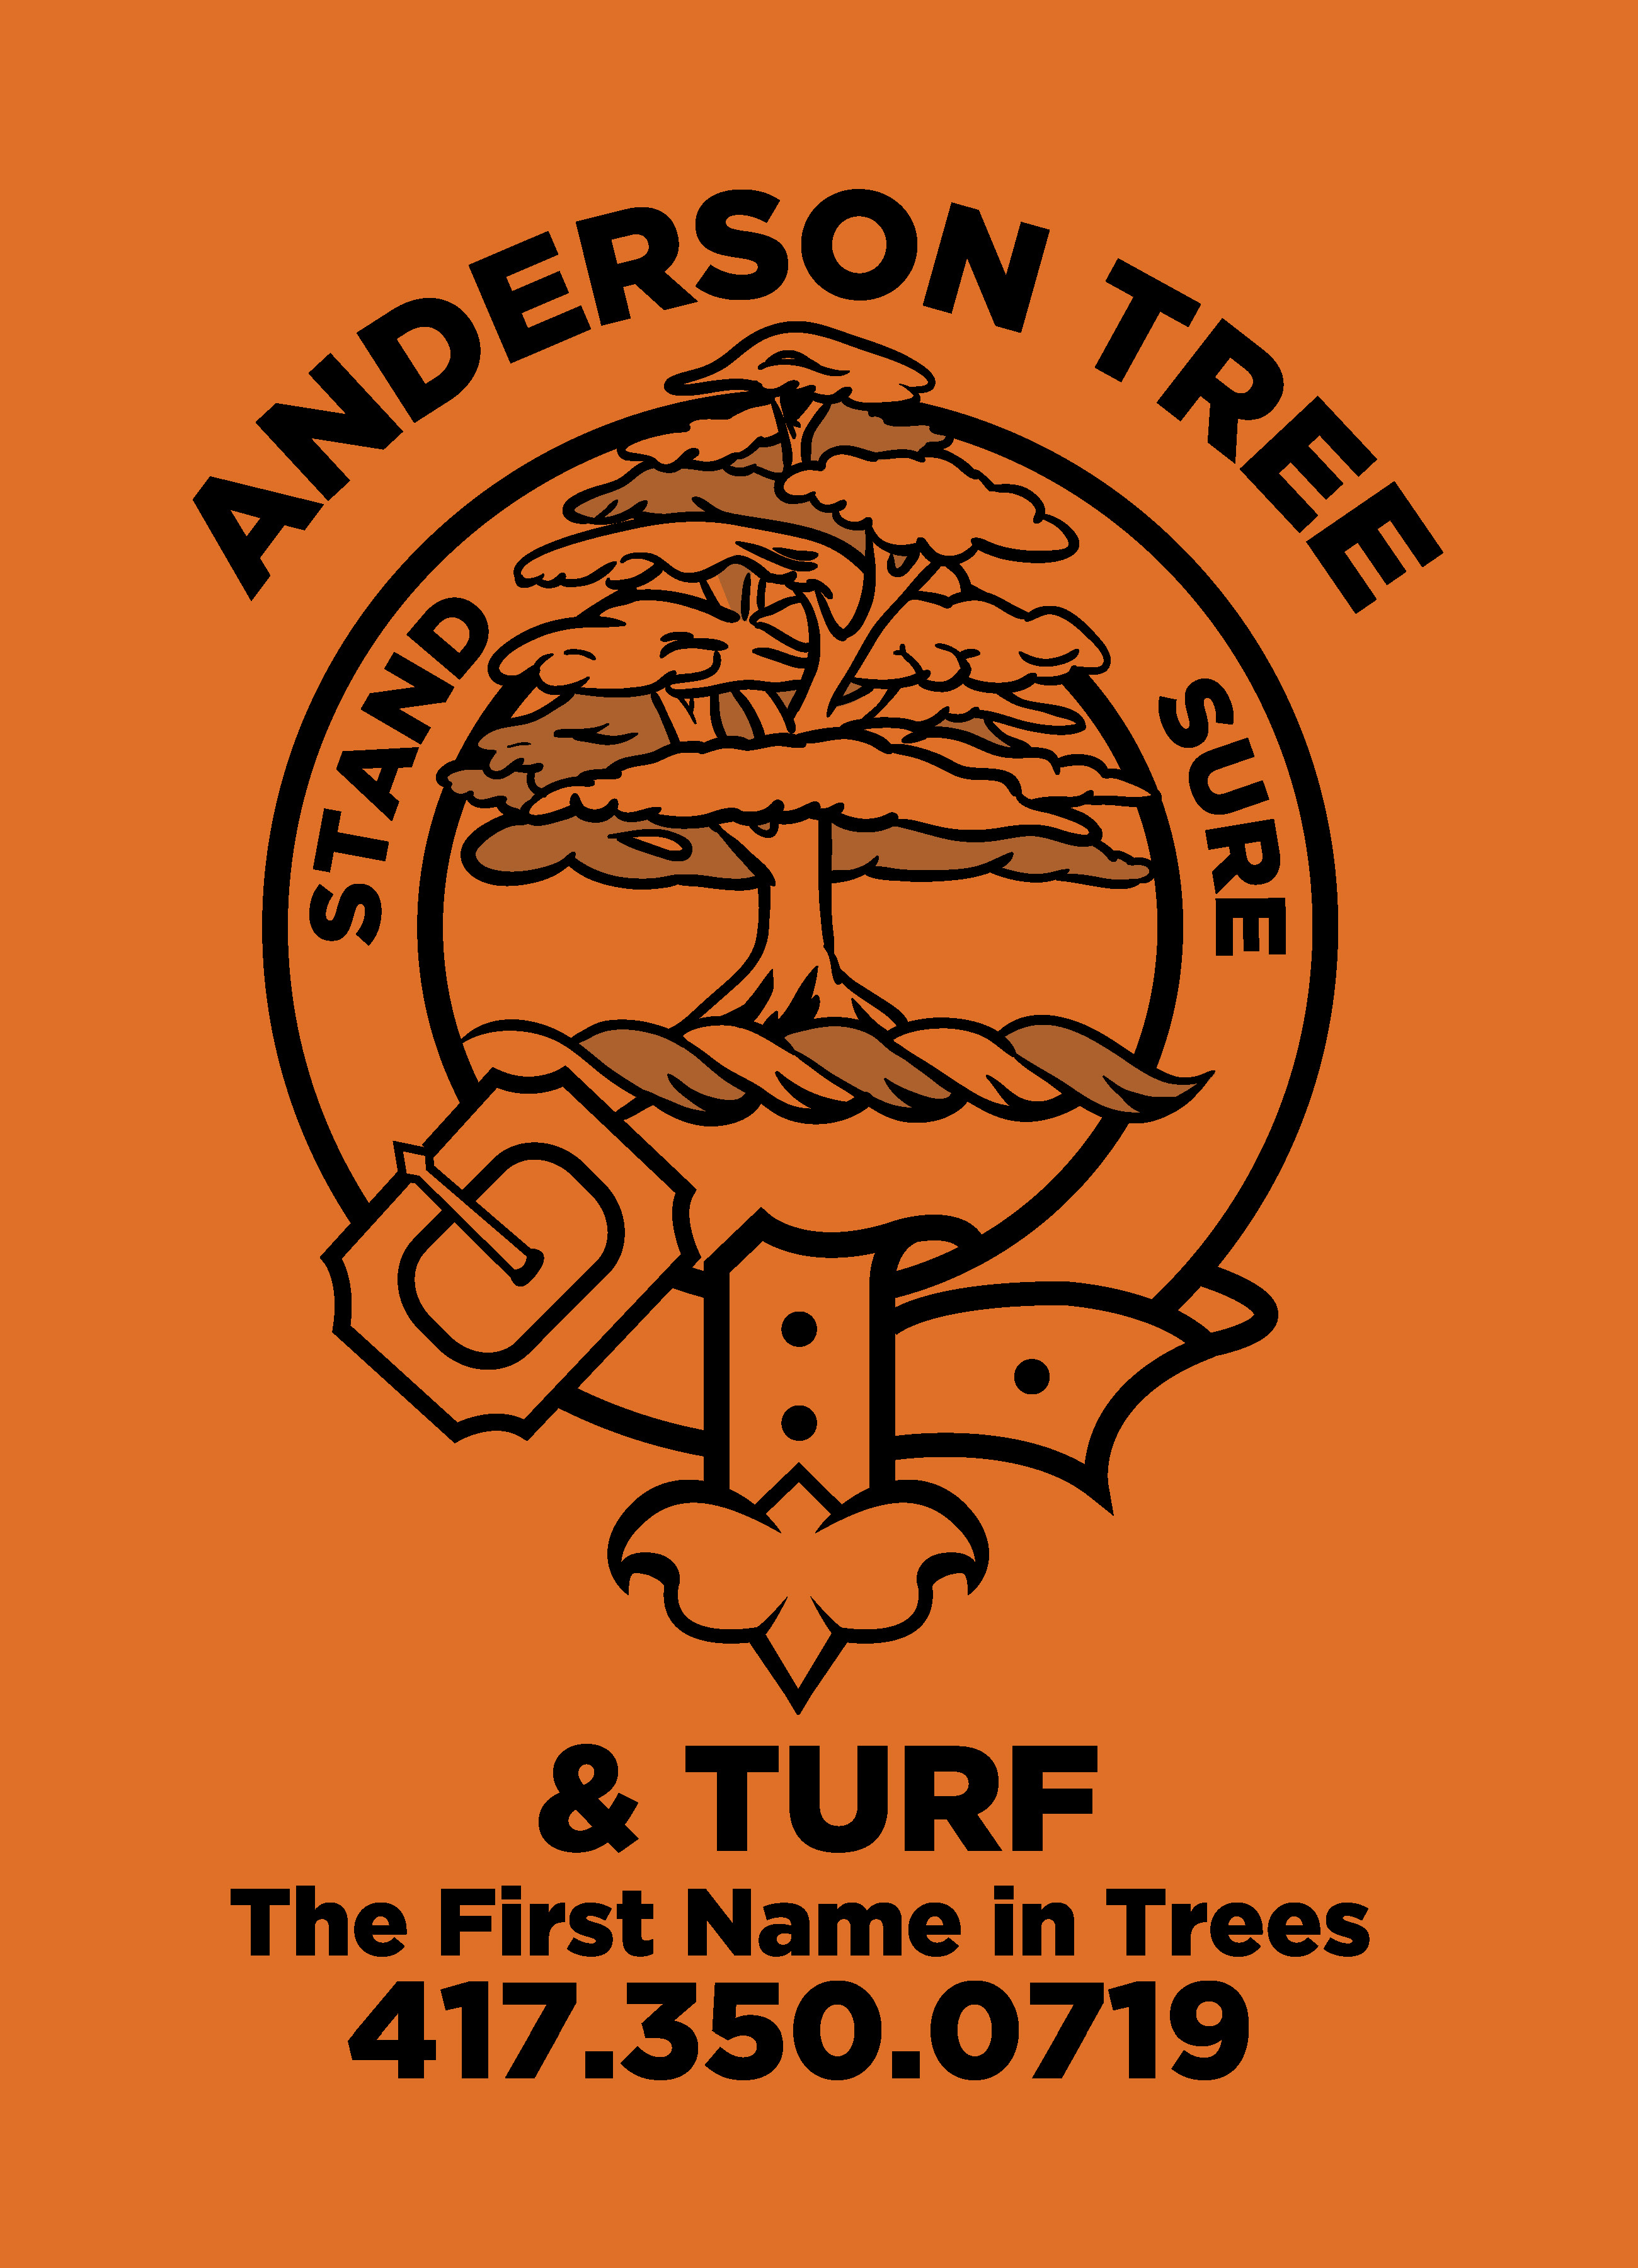 Anderson Tree & Turf, LLC Logo